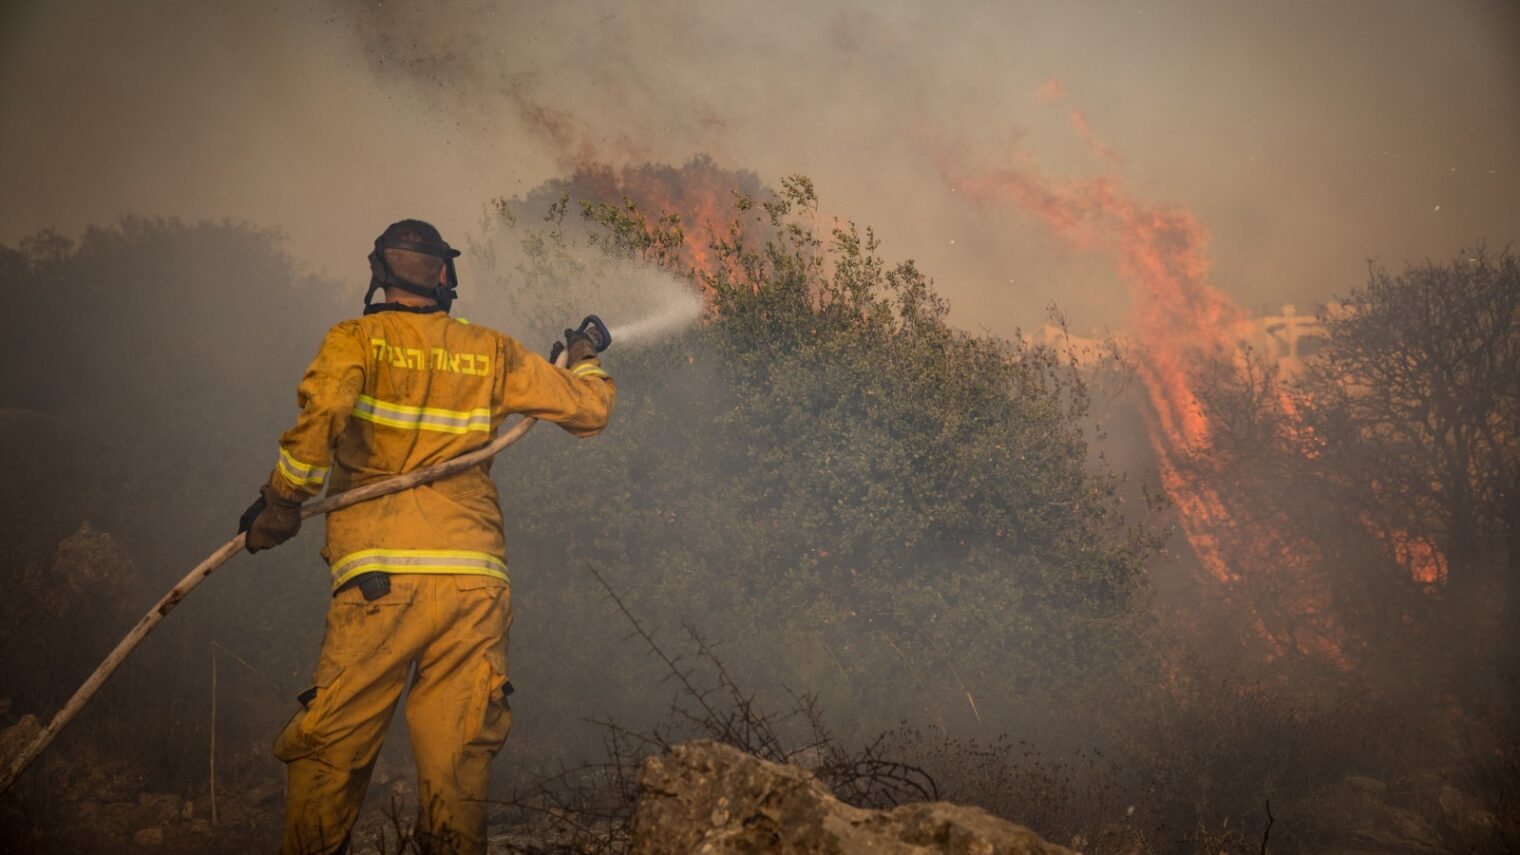 Firefighters extinguishing a forest fire near Jerusalem in November 2019. Photo by Noam Revkin Fenton/Flash90